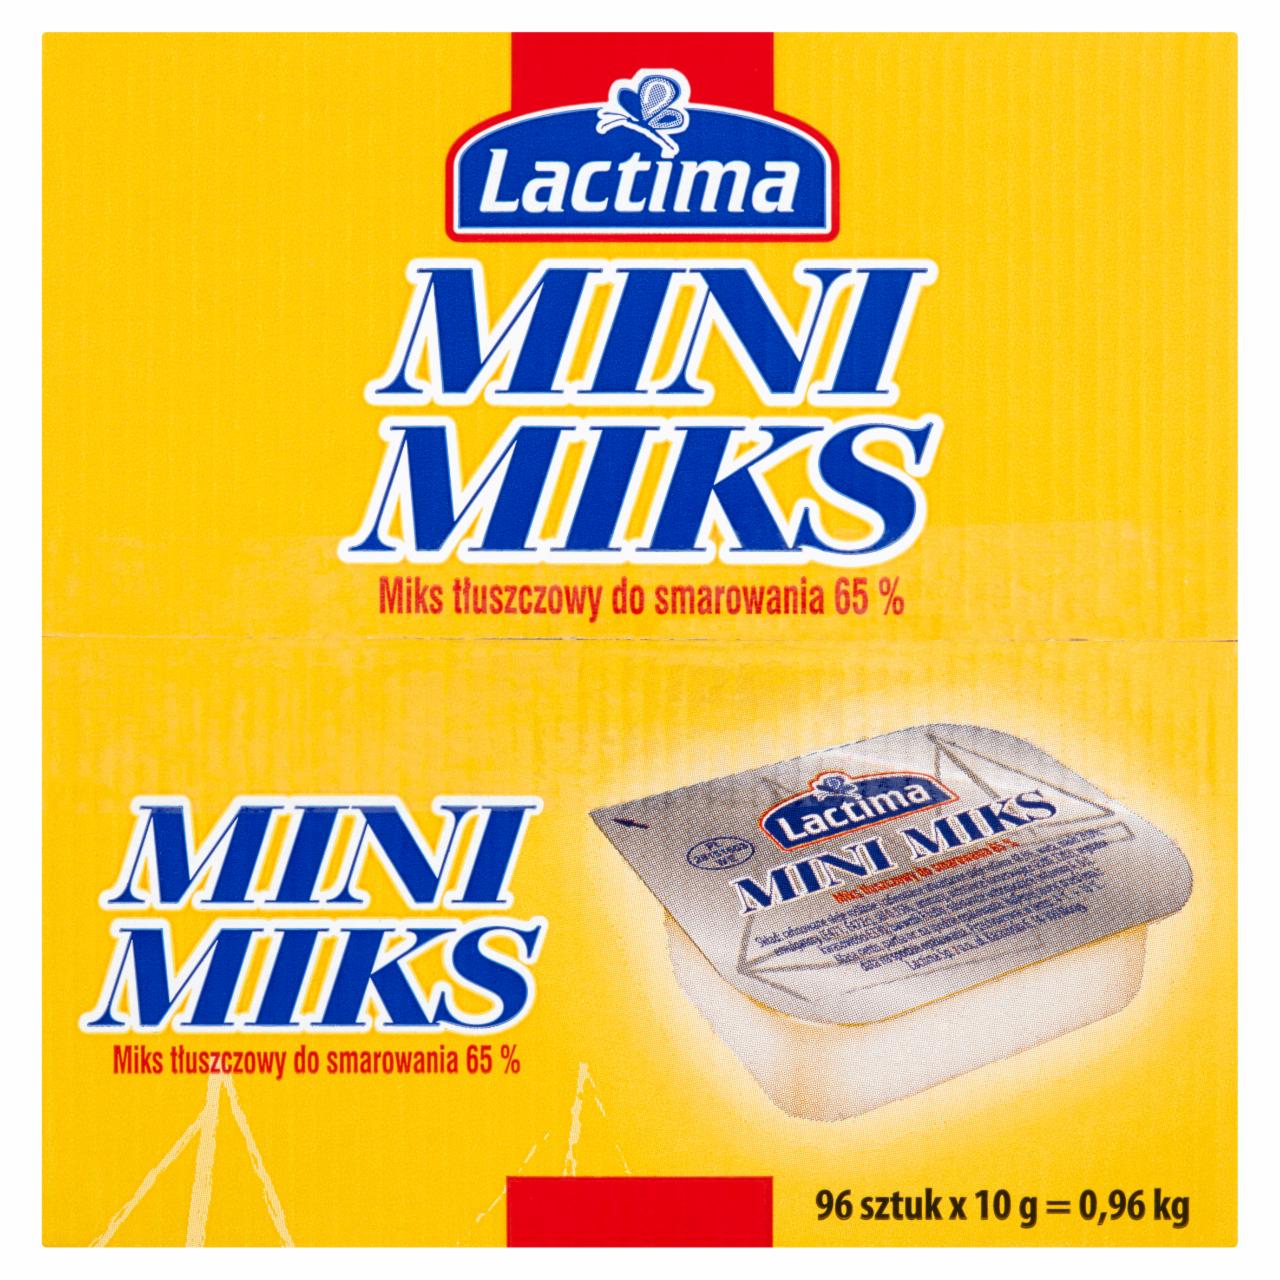 Zdjęcia - Lactima Mini miks Miks tłuszczowy do smarowania 0,96 kg (96 sztuk)